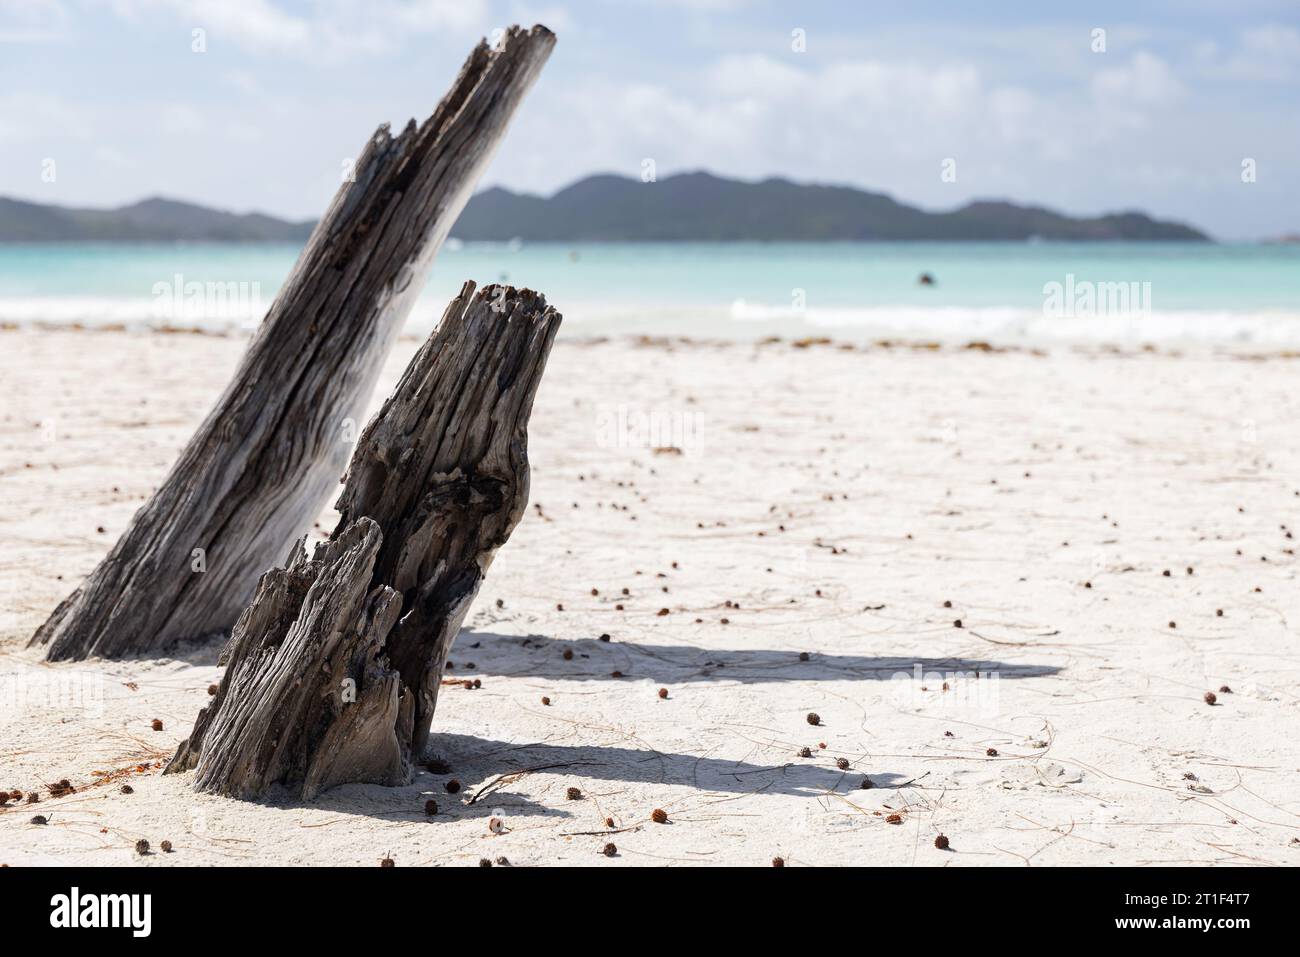 Vue côtière avec troncs d'arbres secs dans le sable blanc sur une journée ensoleillée d'été. Côte d'Or Beach, île de Praslin, Seychelles Banque D'Images